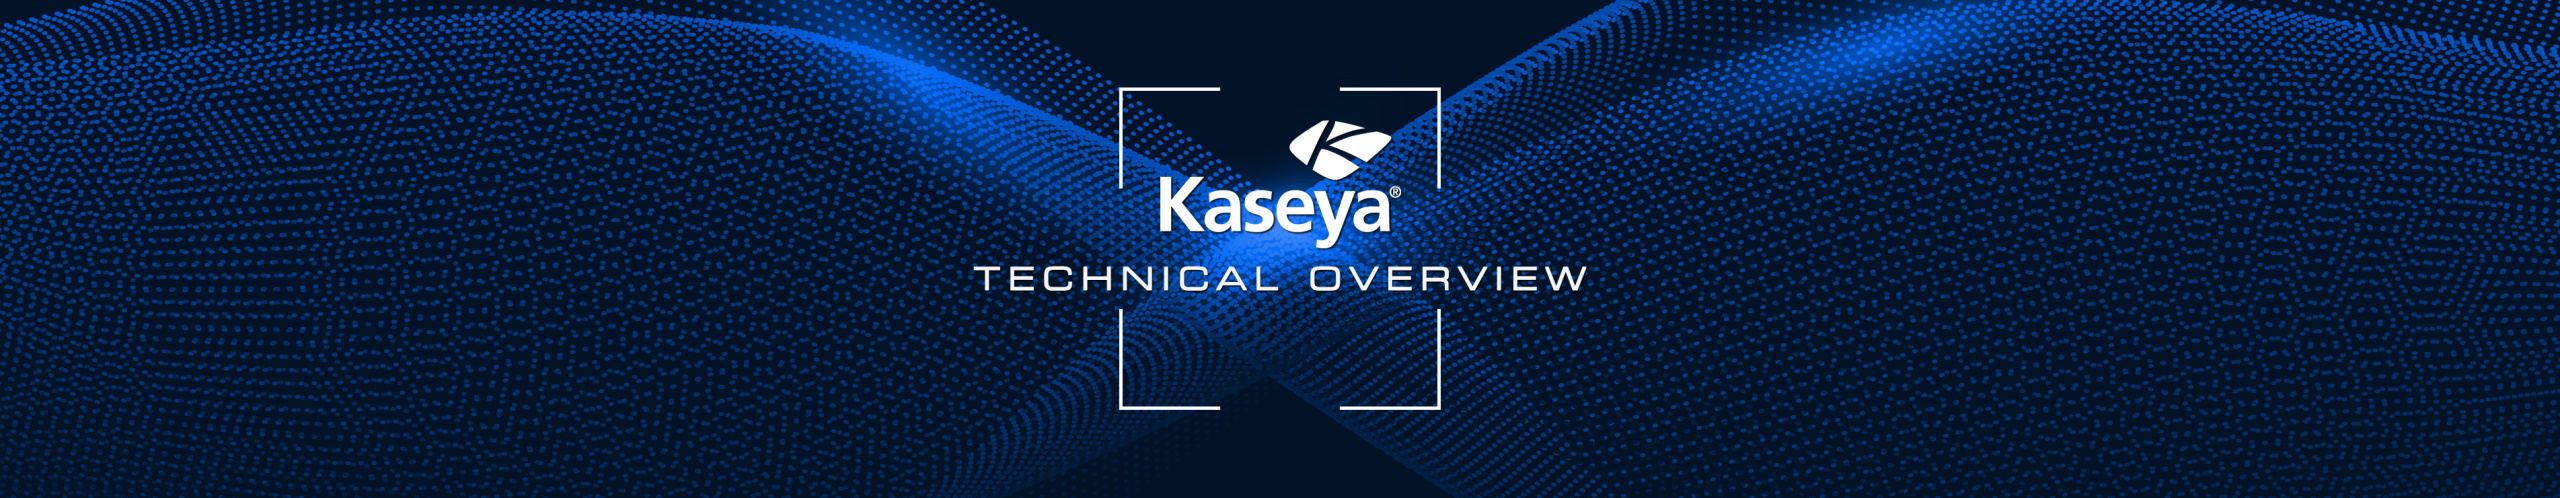 Kaseya Technical Overview